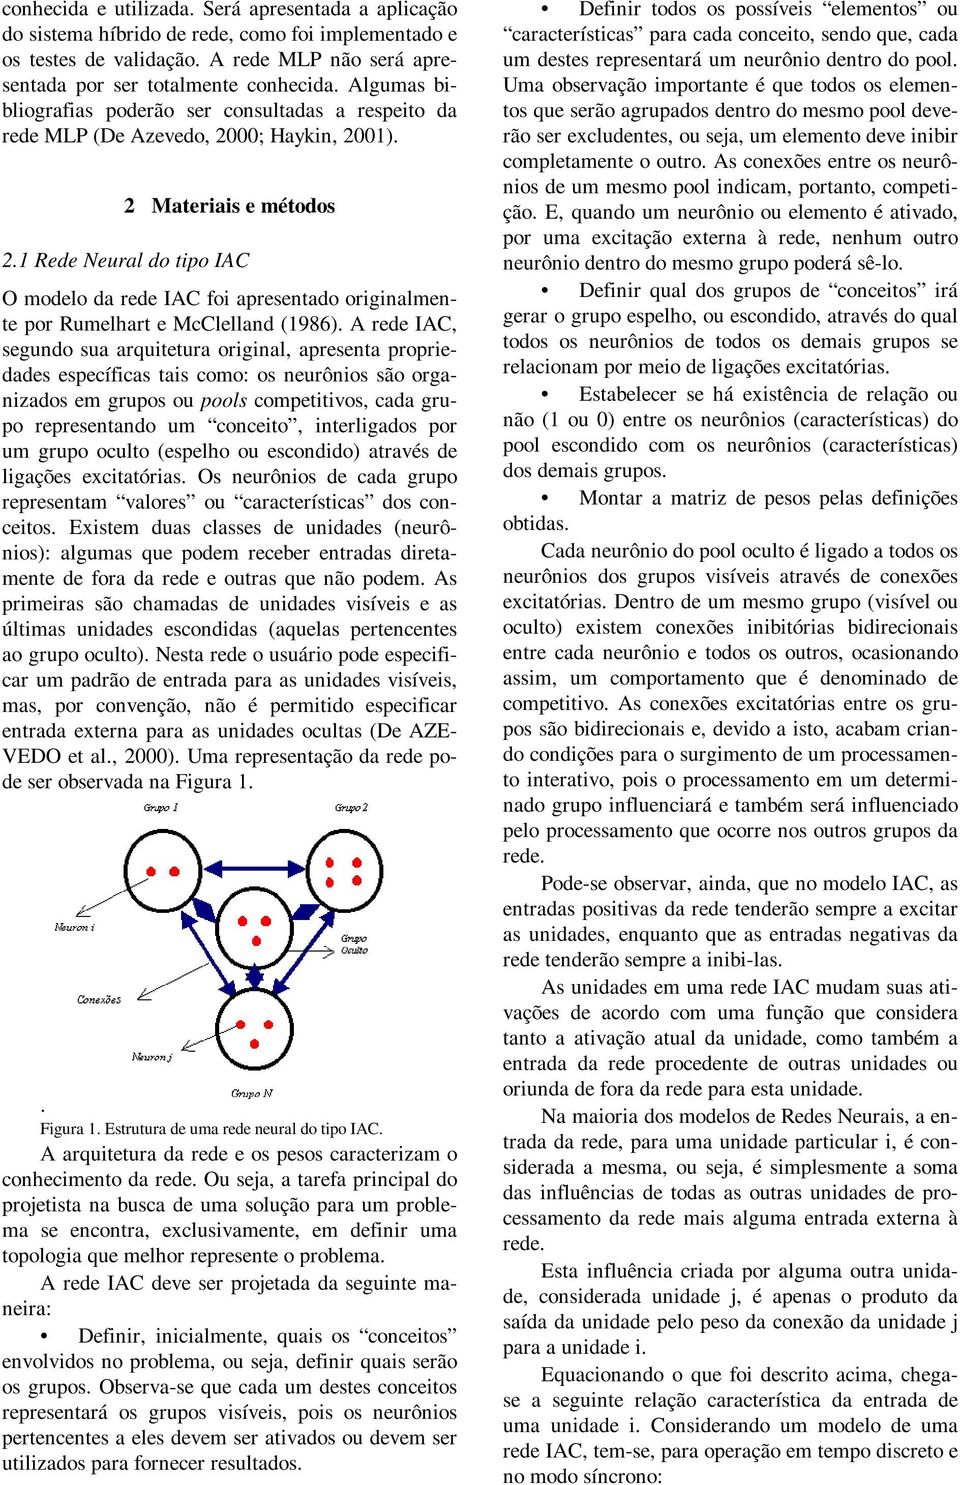 1 Rede Neural do tpo IAC O modelo da rede IAC fo apresentado orgnalmente por Rumelhart e McClelland (1986).